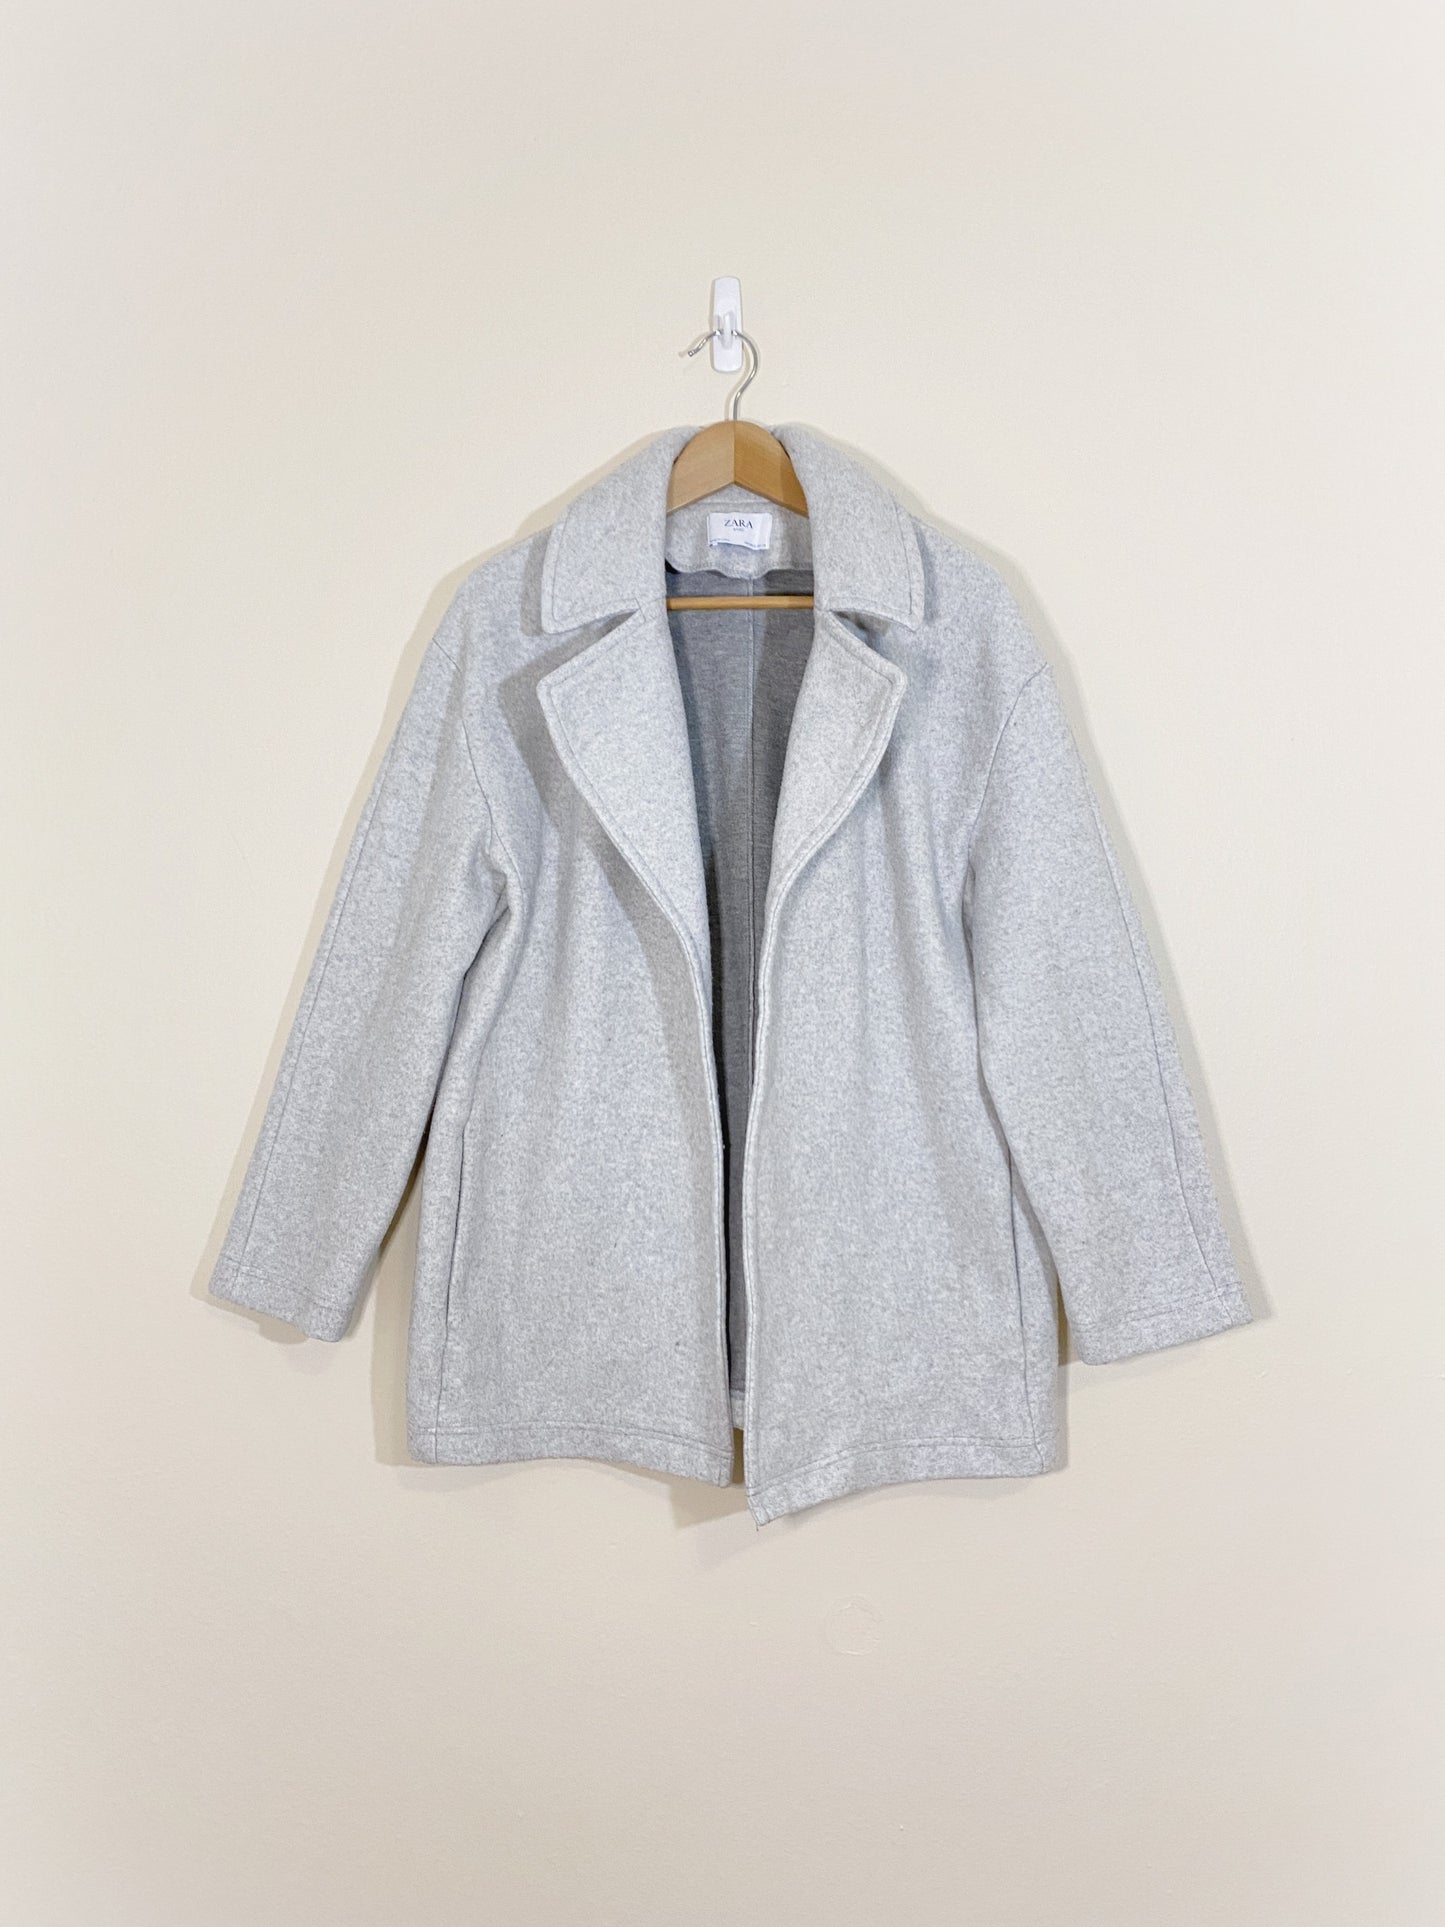 Grey Jacket (Small)